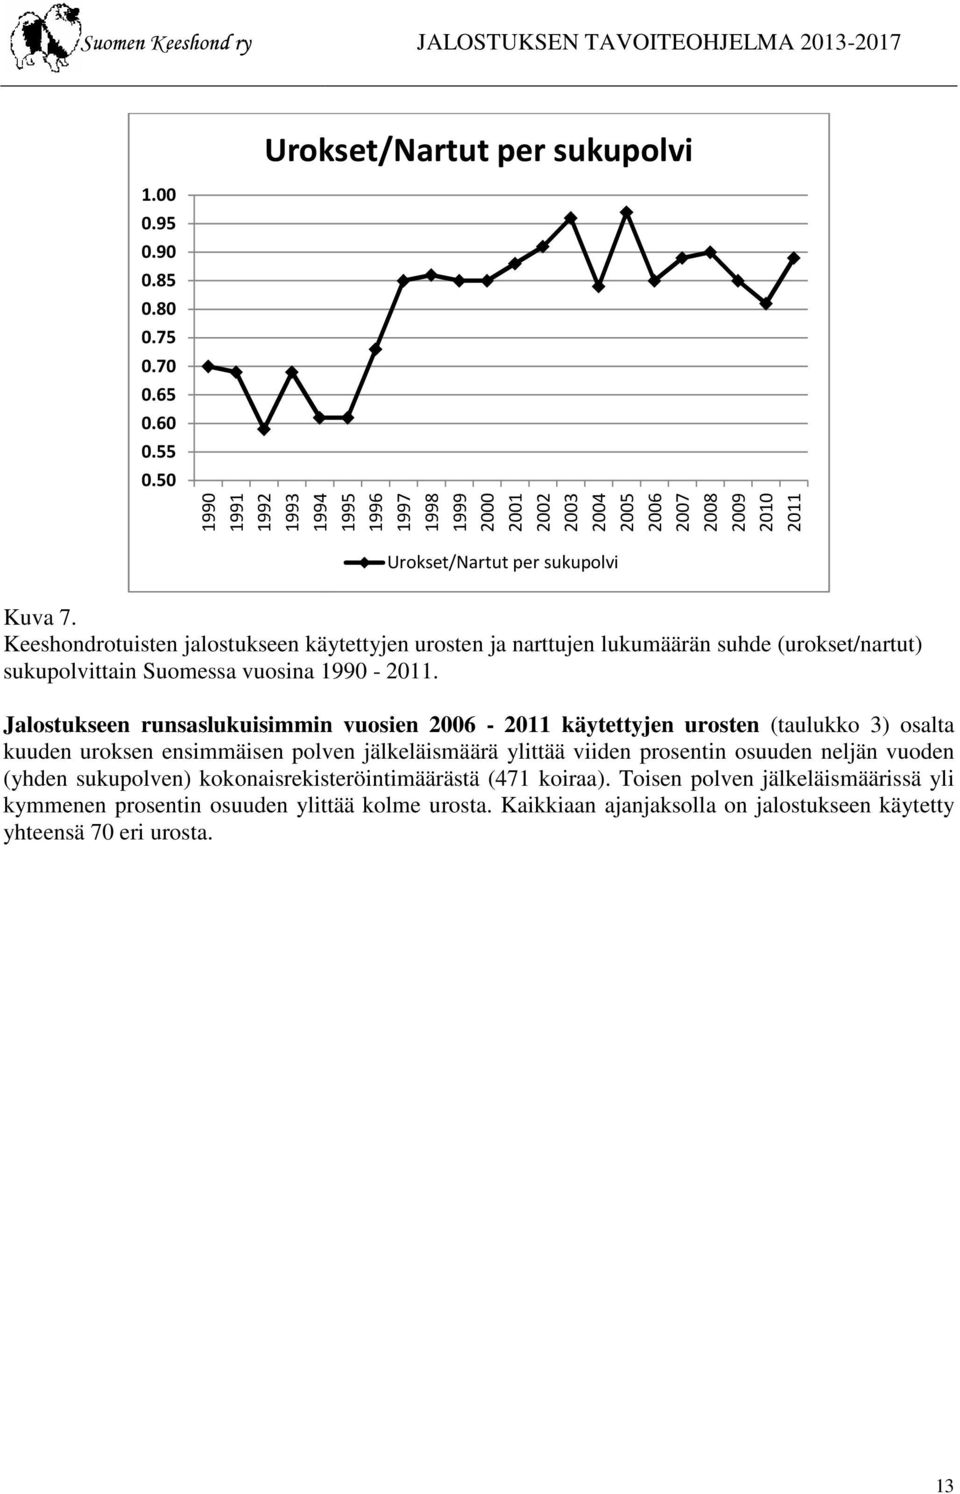 Keeshondrotuisten jalostukseen käytettyjen urosten ja narttujen lukumäärän suhde (urokset/nartut) sukupolvittain Suomessa vuosina 1990-2011.